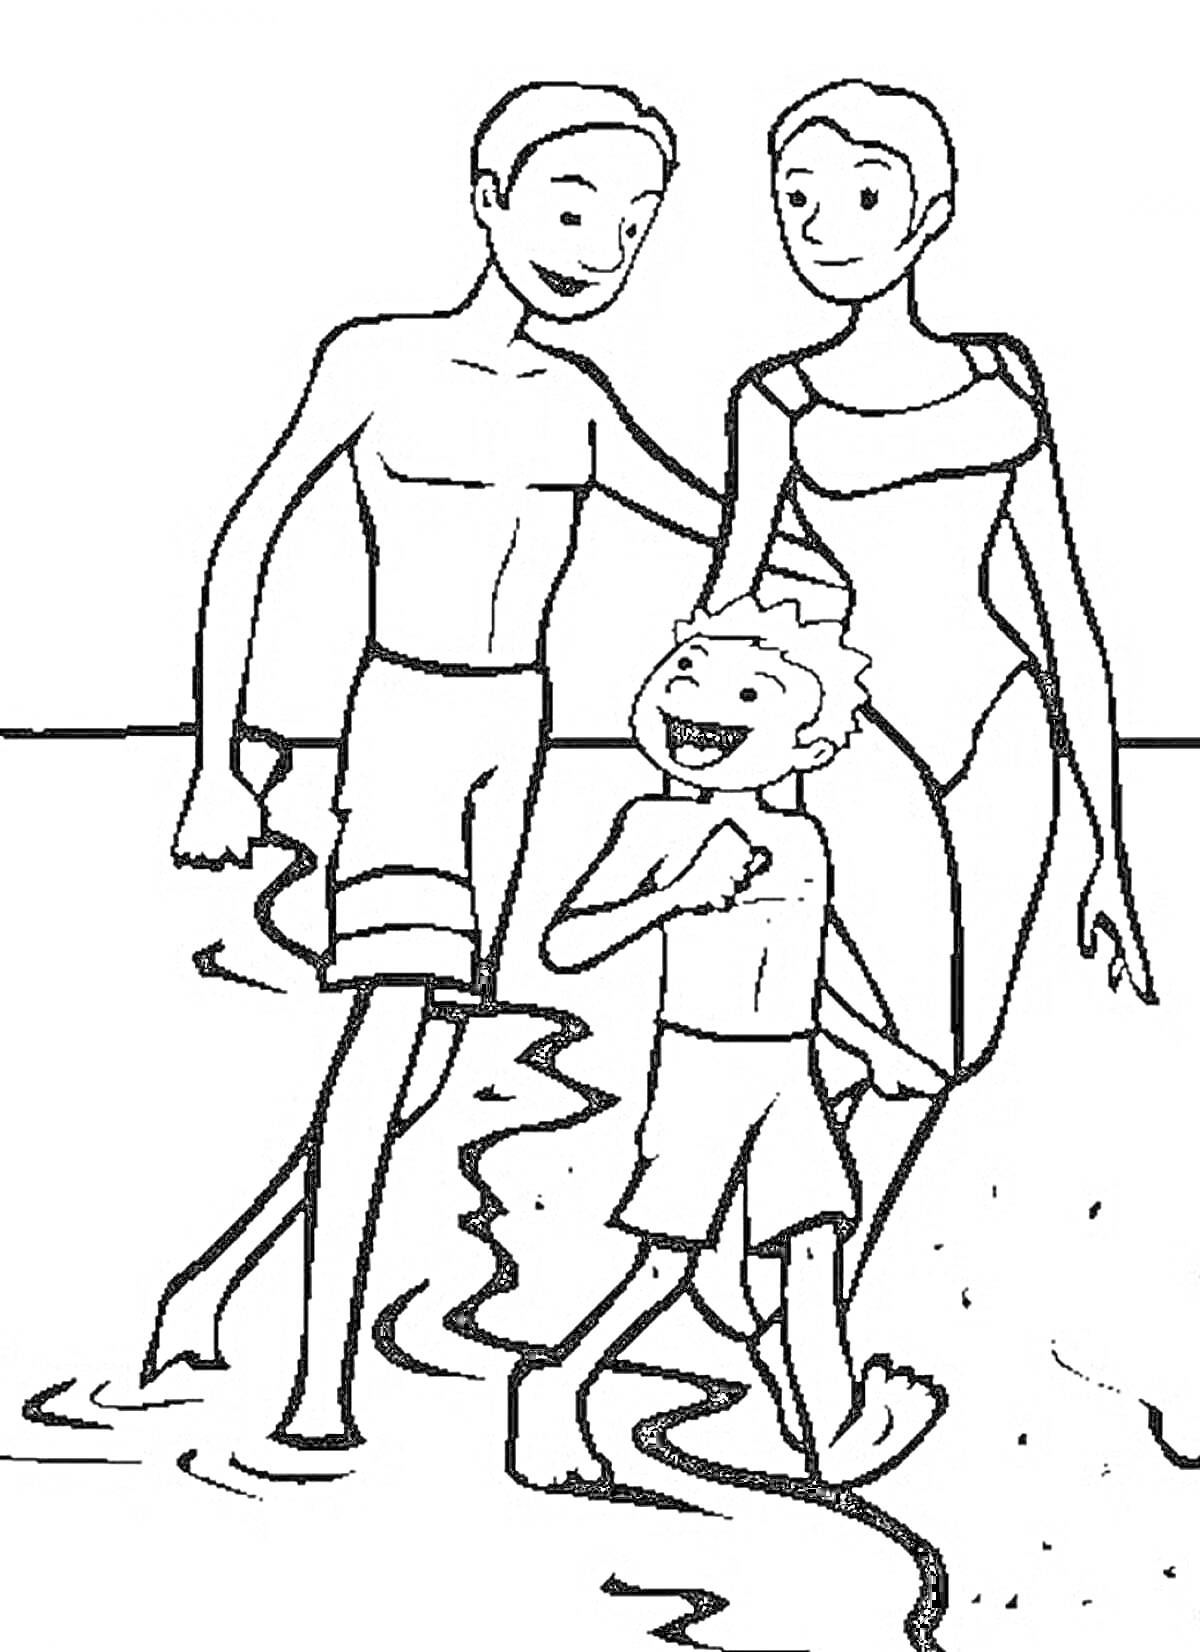 Раскраска Семья на пляже: отец, мать и ребенок на берегу моря